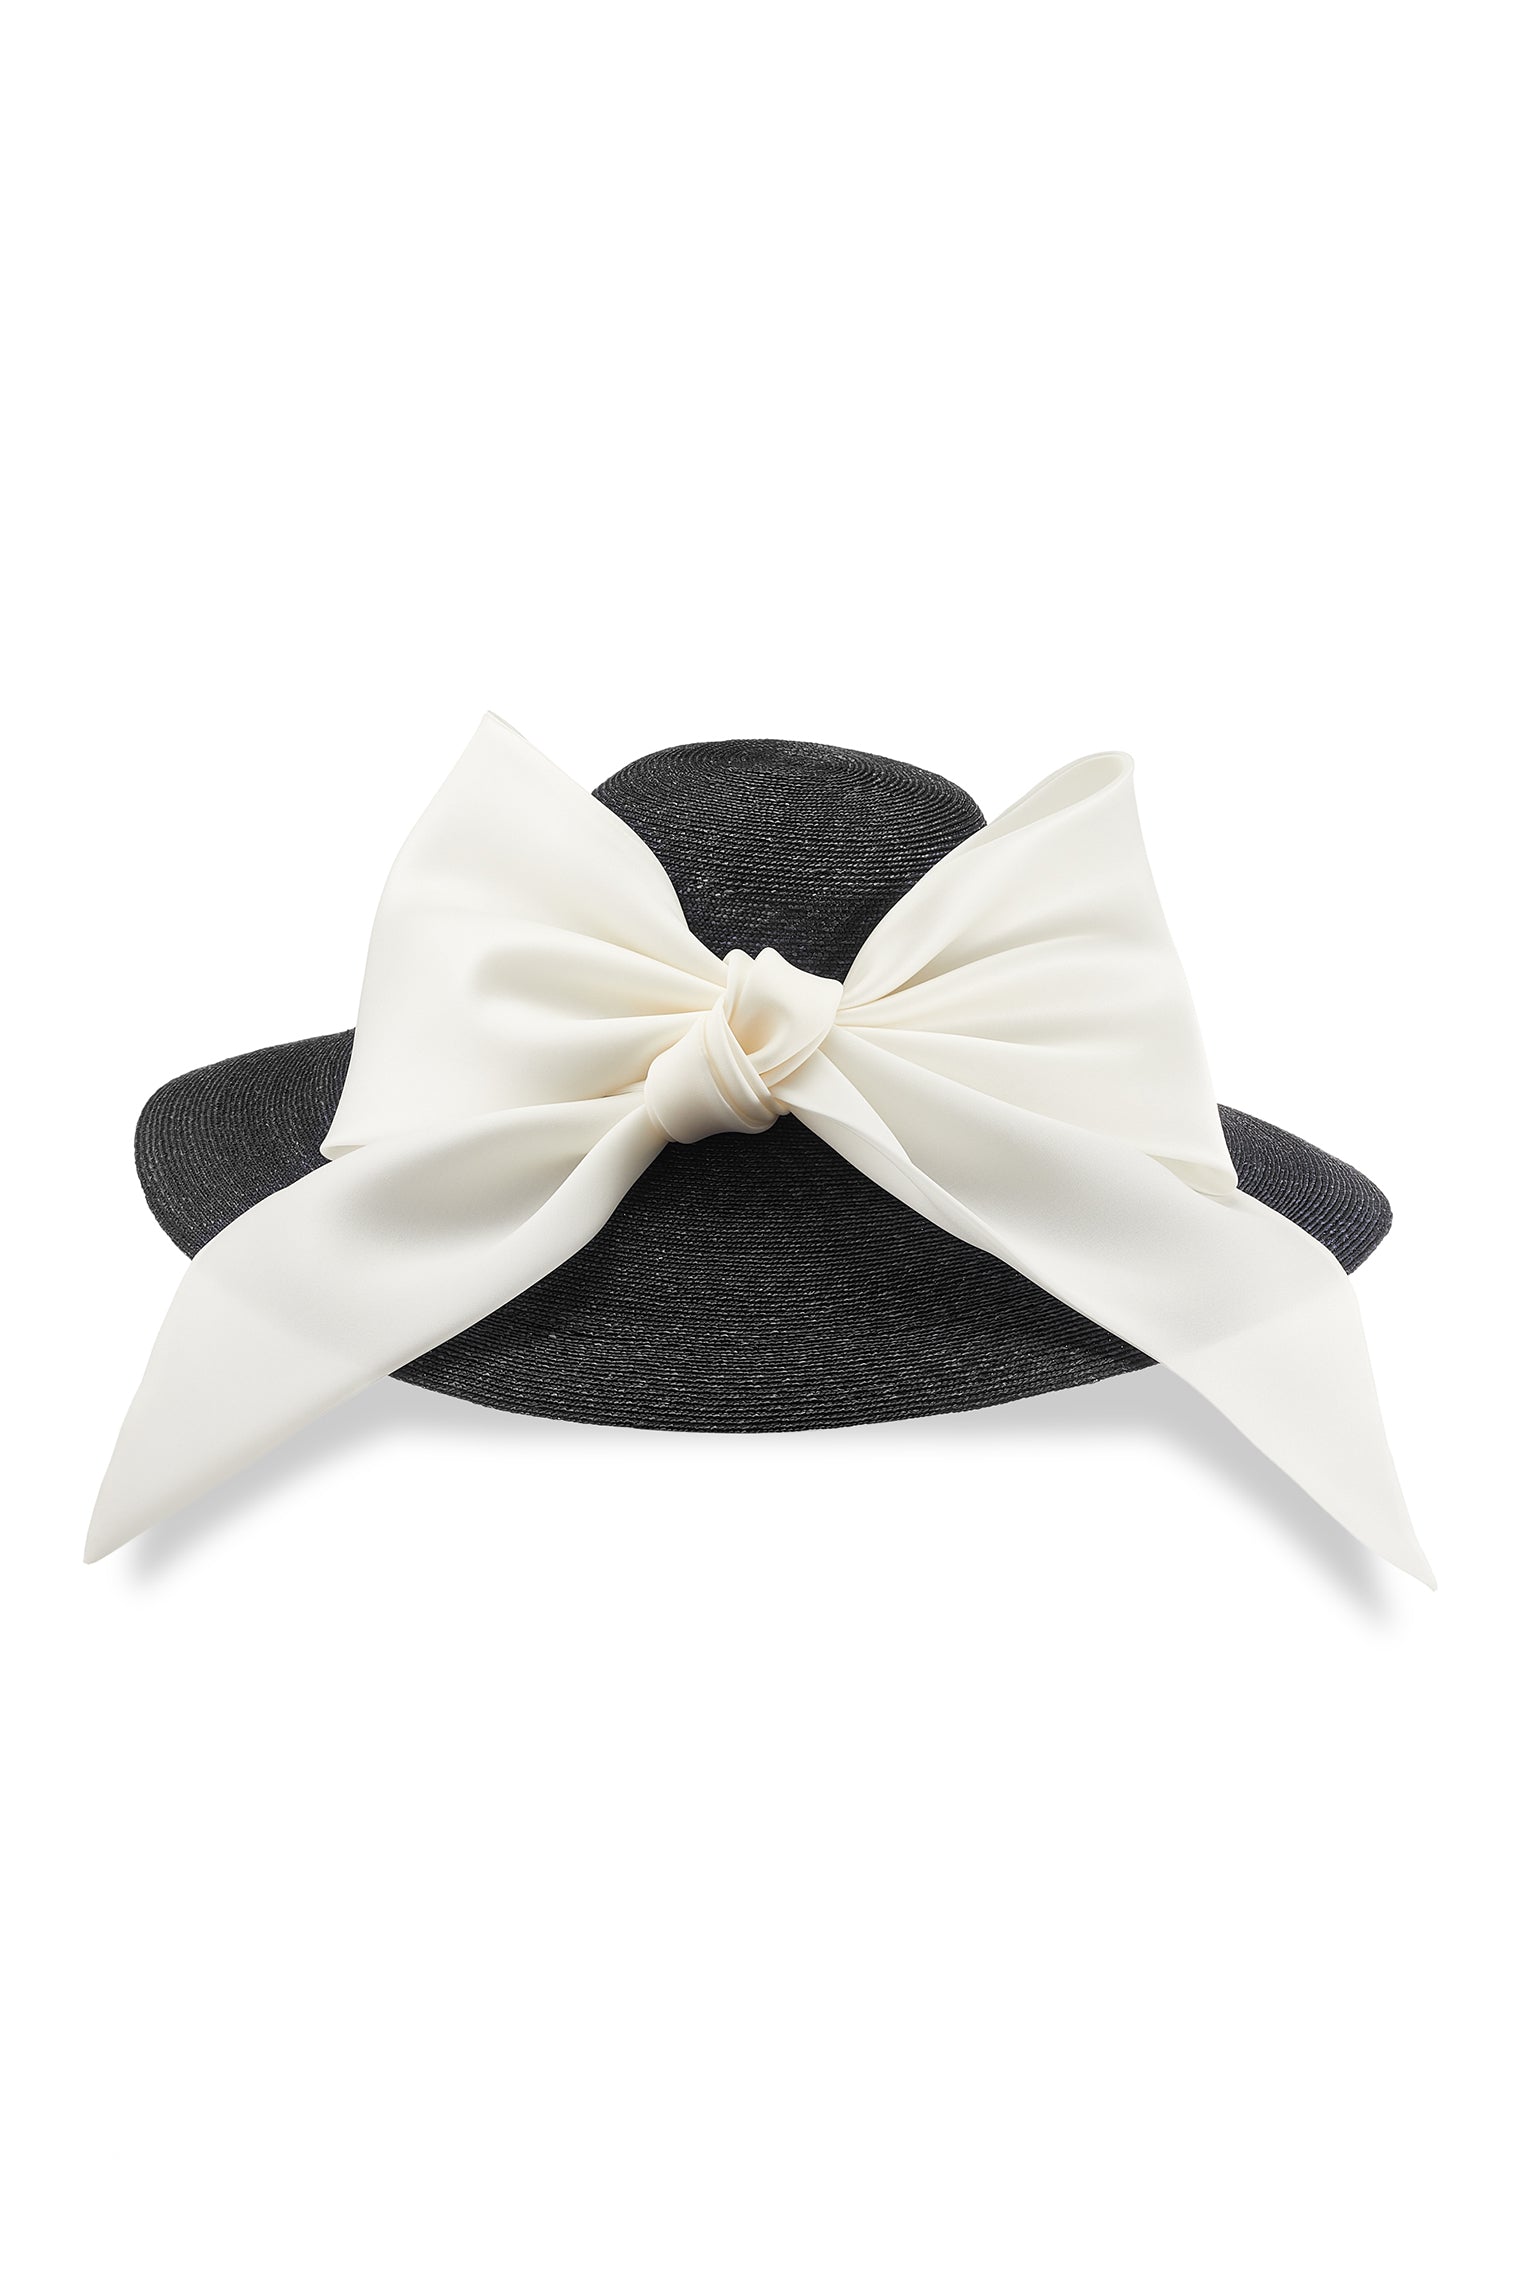 Darjeeling Black Wide Brim Hat - Products - Lock & Co. Hatters London UK